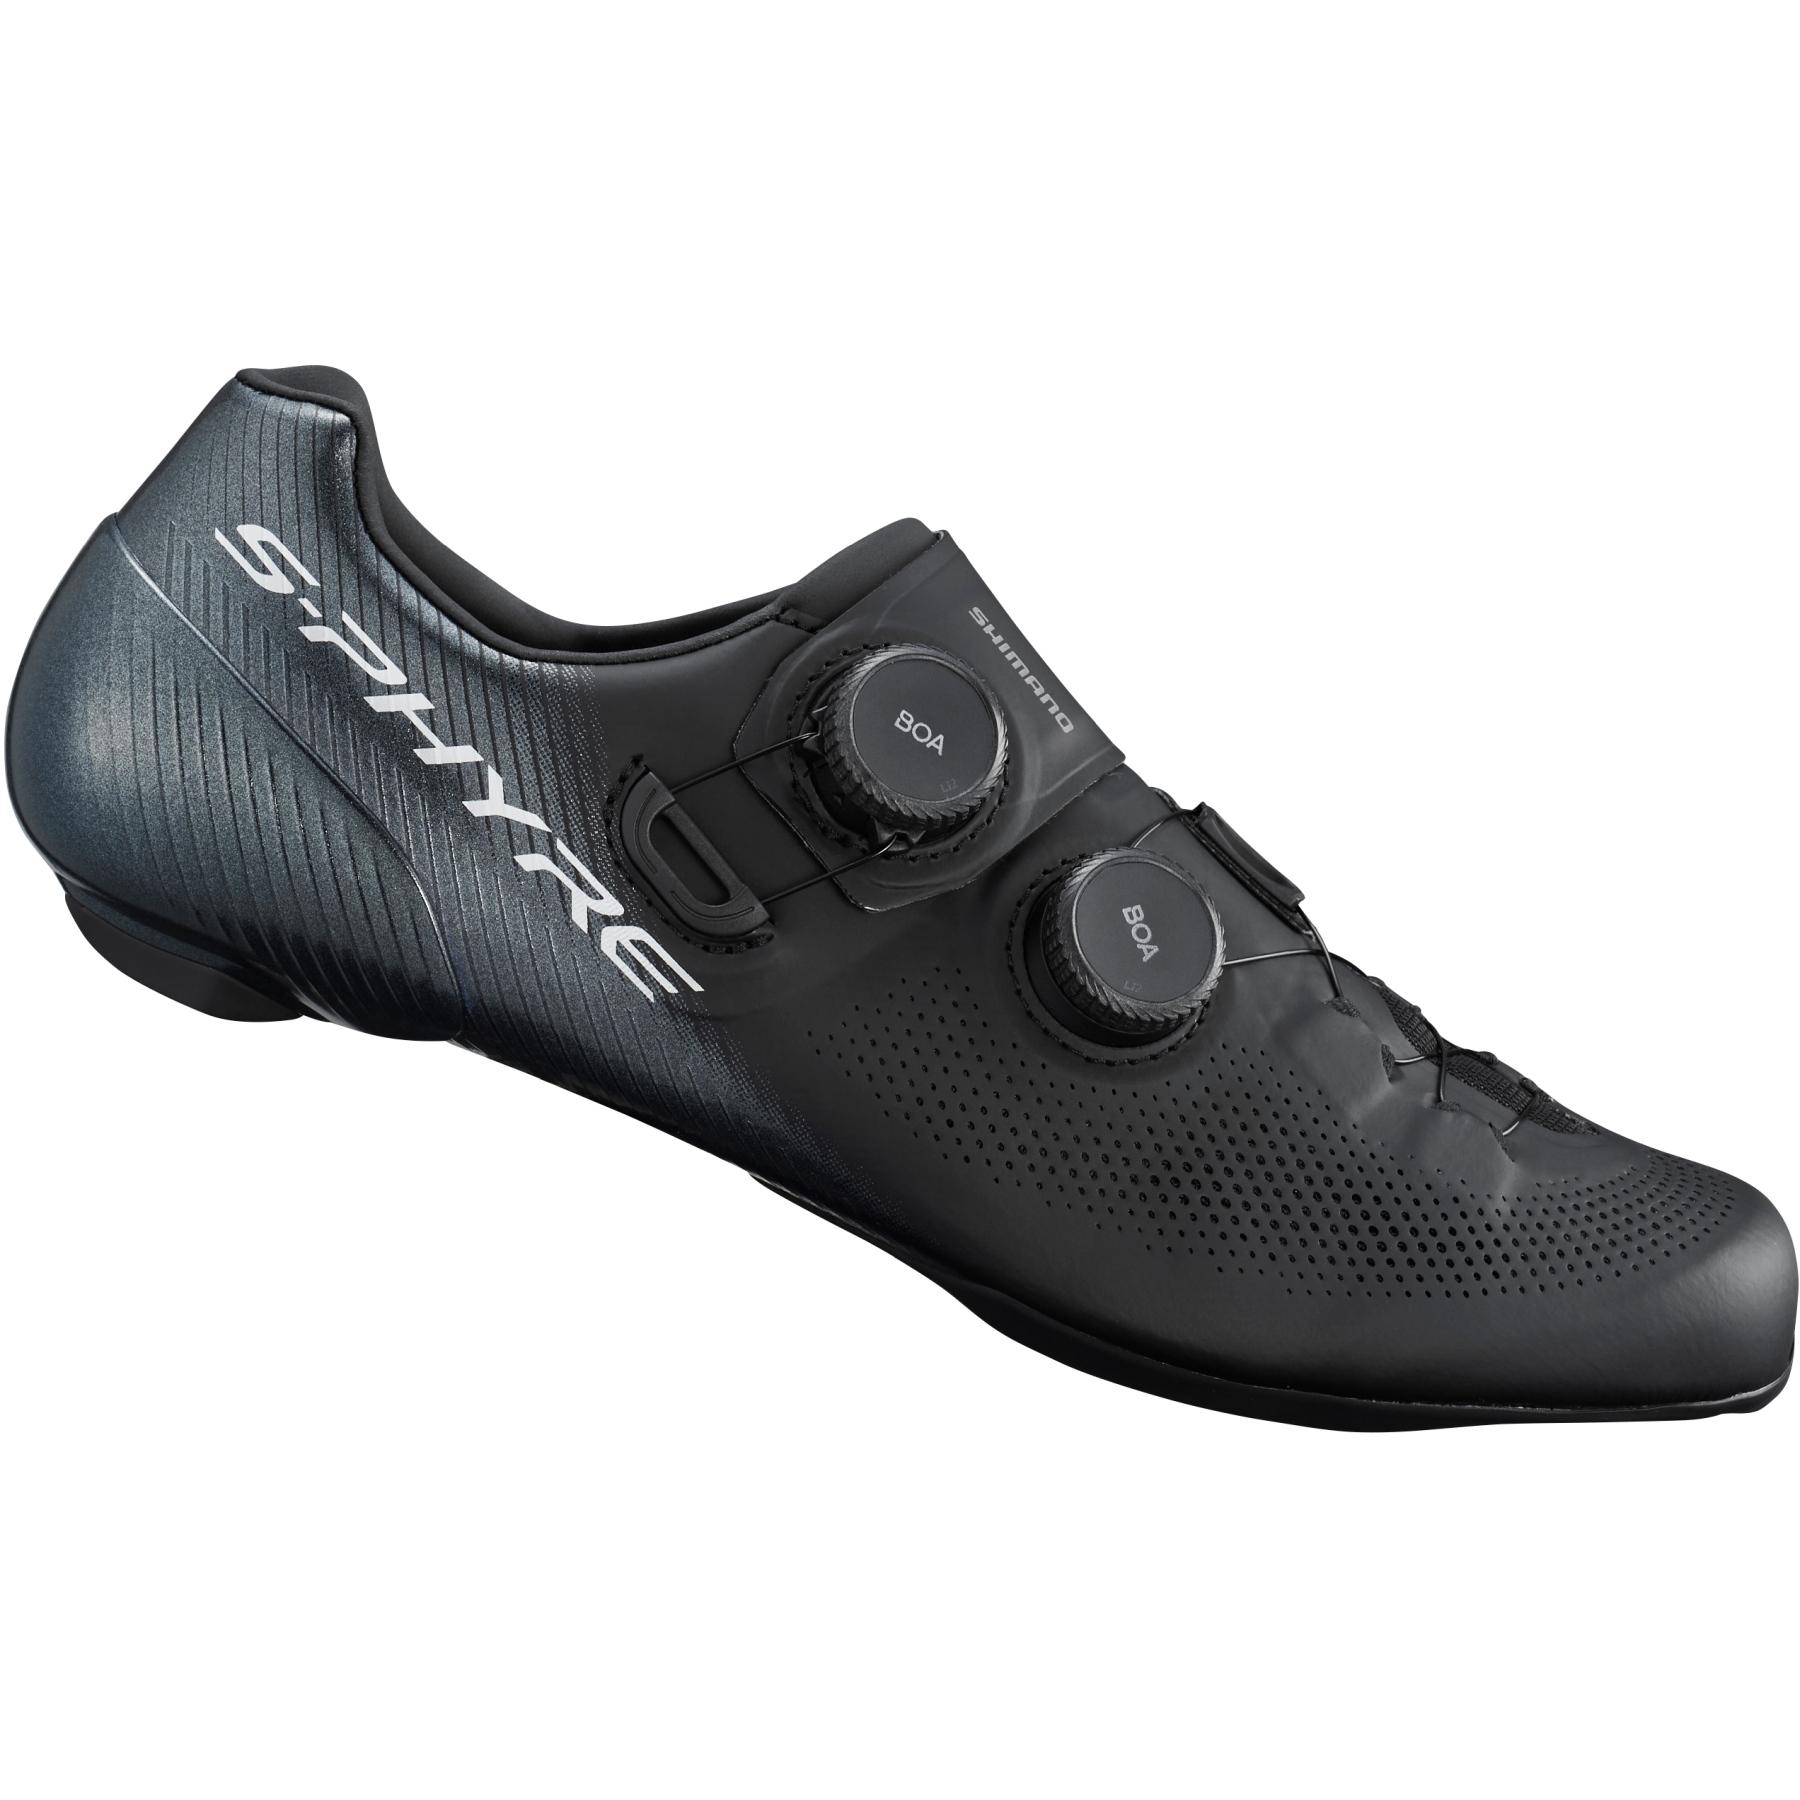 Produktbild von Shimano S-Phyre SH-RC903 Rennrad Schuhe - schwarz - B-Ware